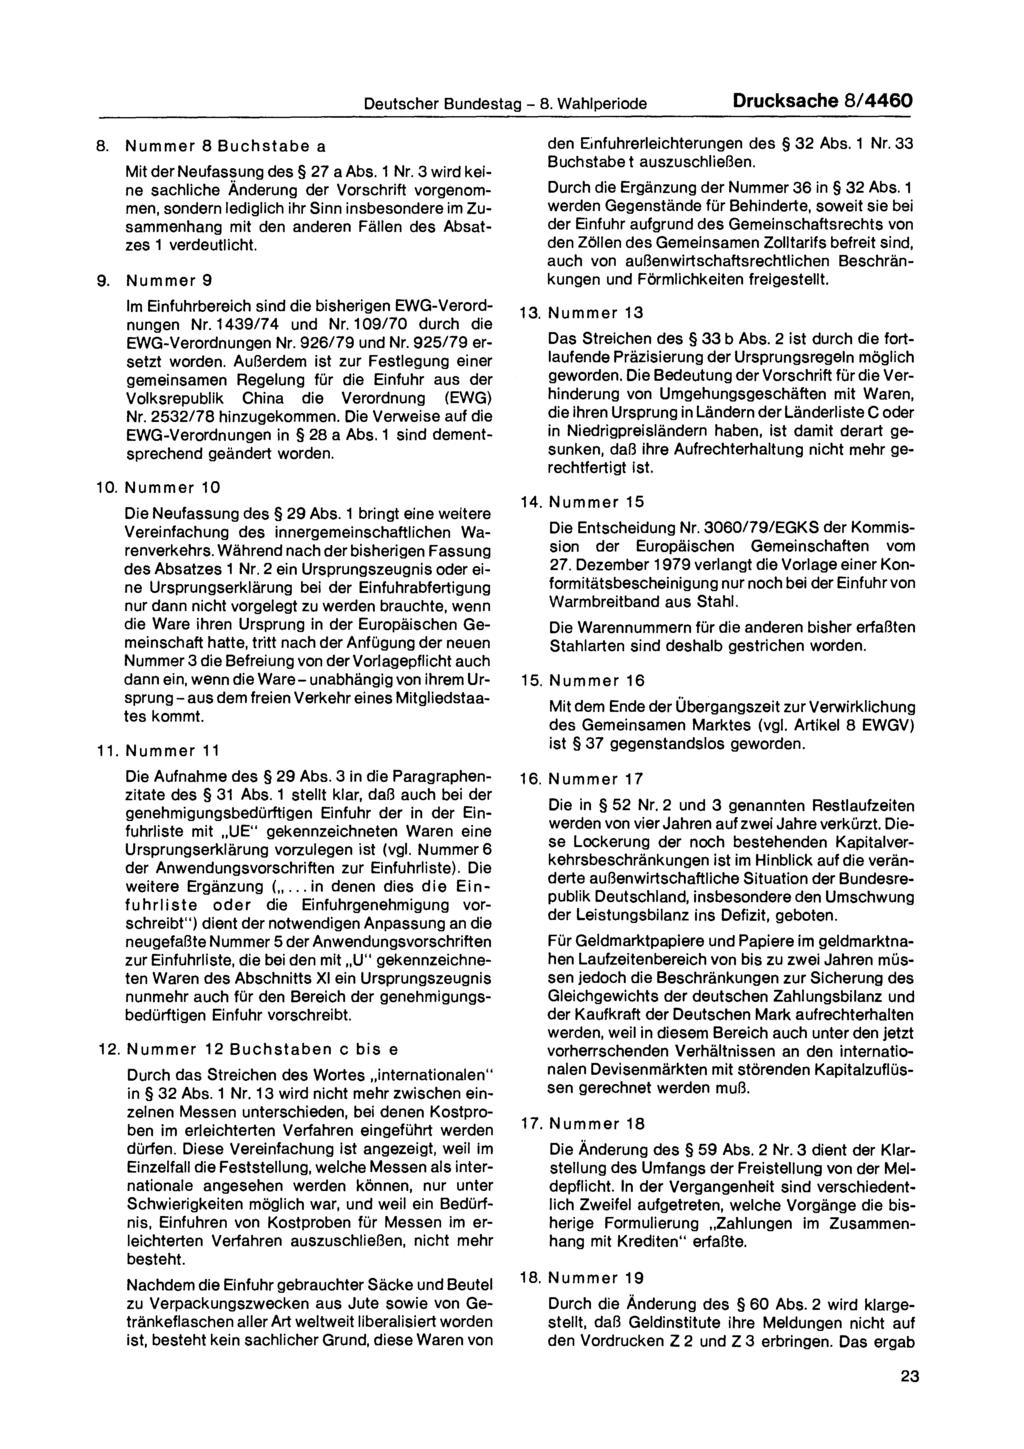 Deutscher Bundestag - 8. Wahlperiode Drucksache 8/4460 8. Nummer 8 Buchstabe a Mit der Neufassung des 27 a Abs. 1 Nr.